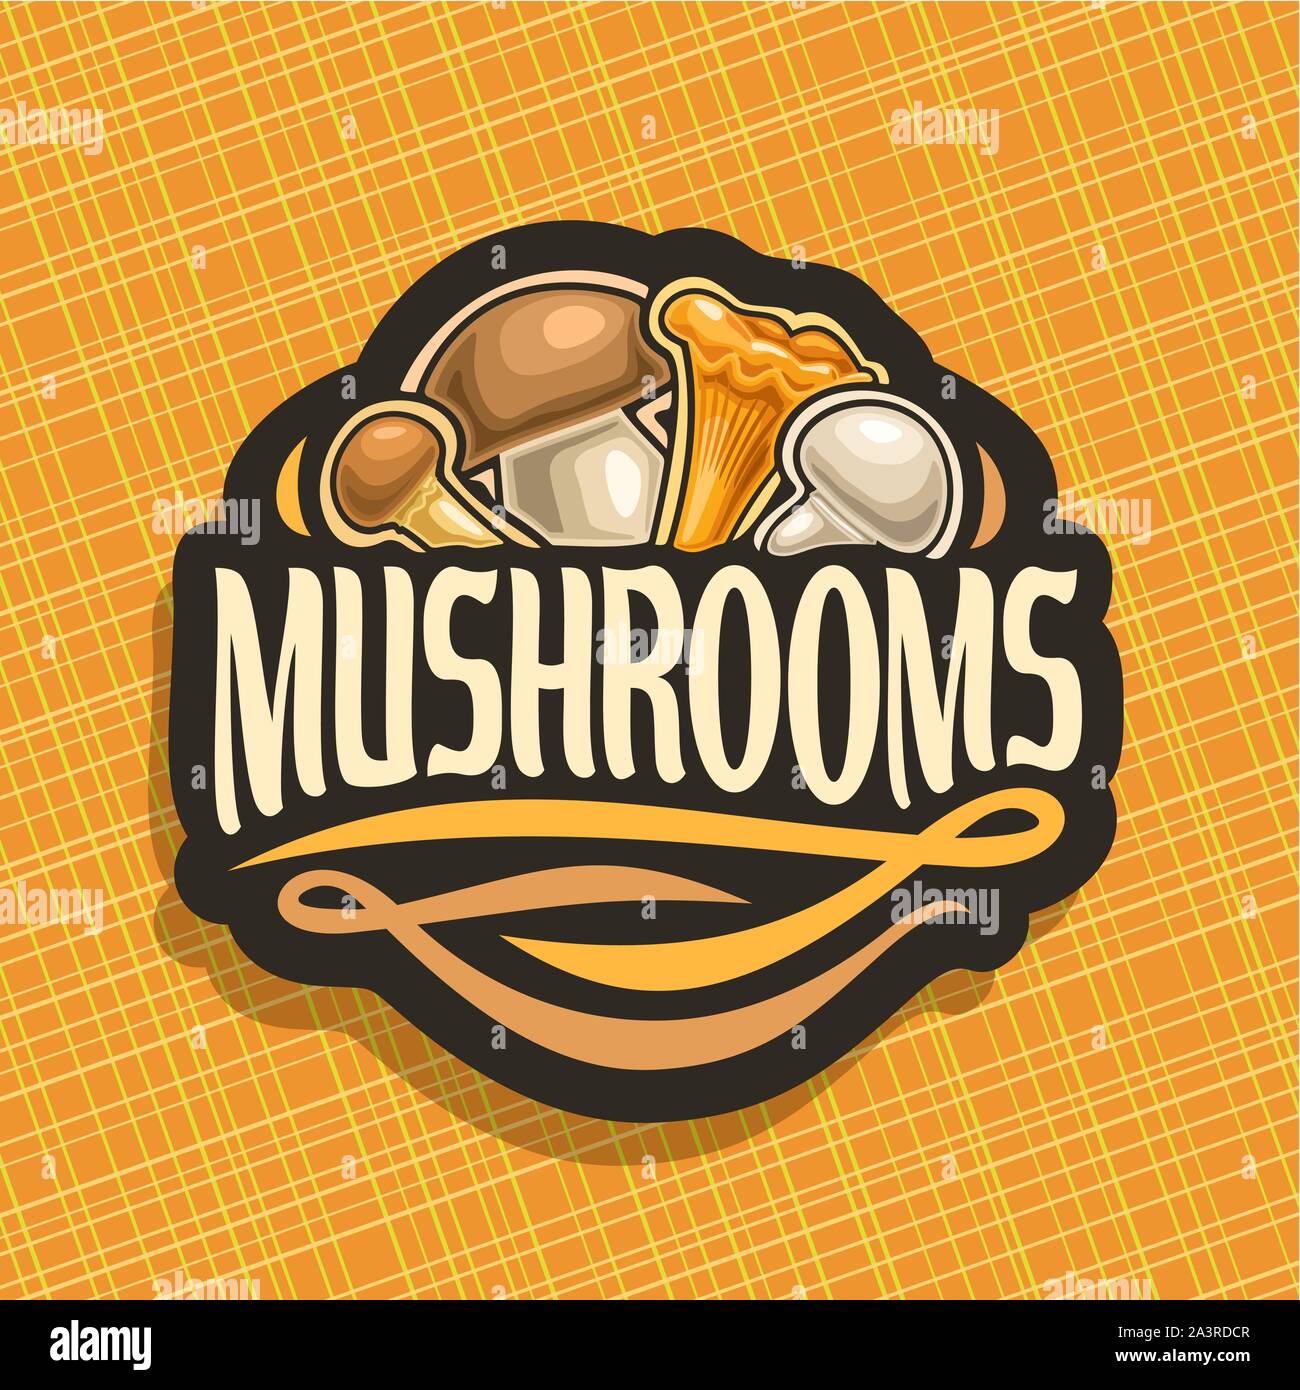 Il logo del vettore per i funghi, segno di taglio con miele commestibili agaric selvagge di funghi porcini, foresta chanterelle, freschi champignon su sfondo geometrico, veg Illustrazione Vettoriale